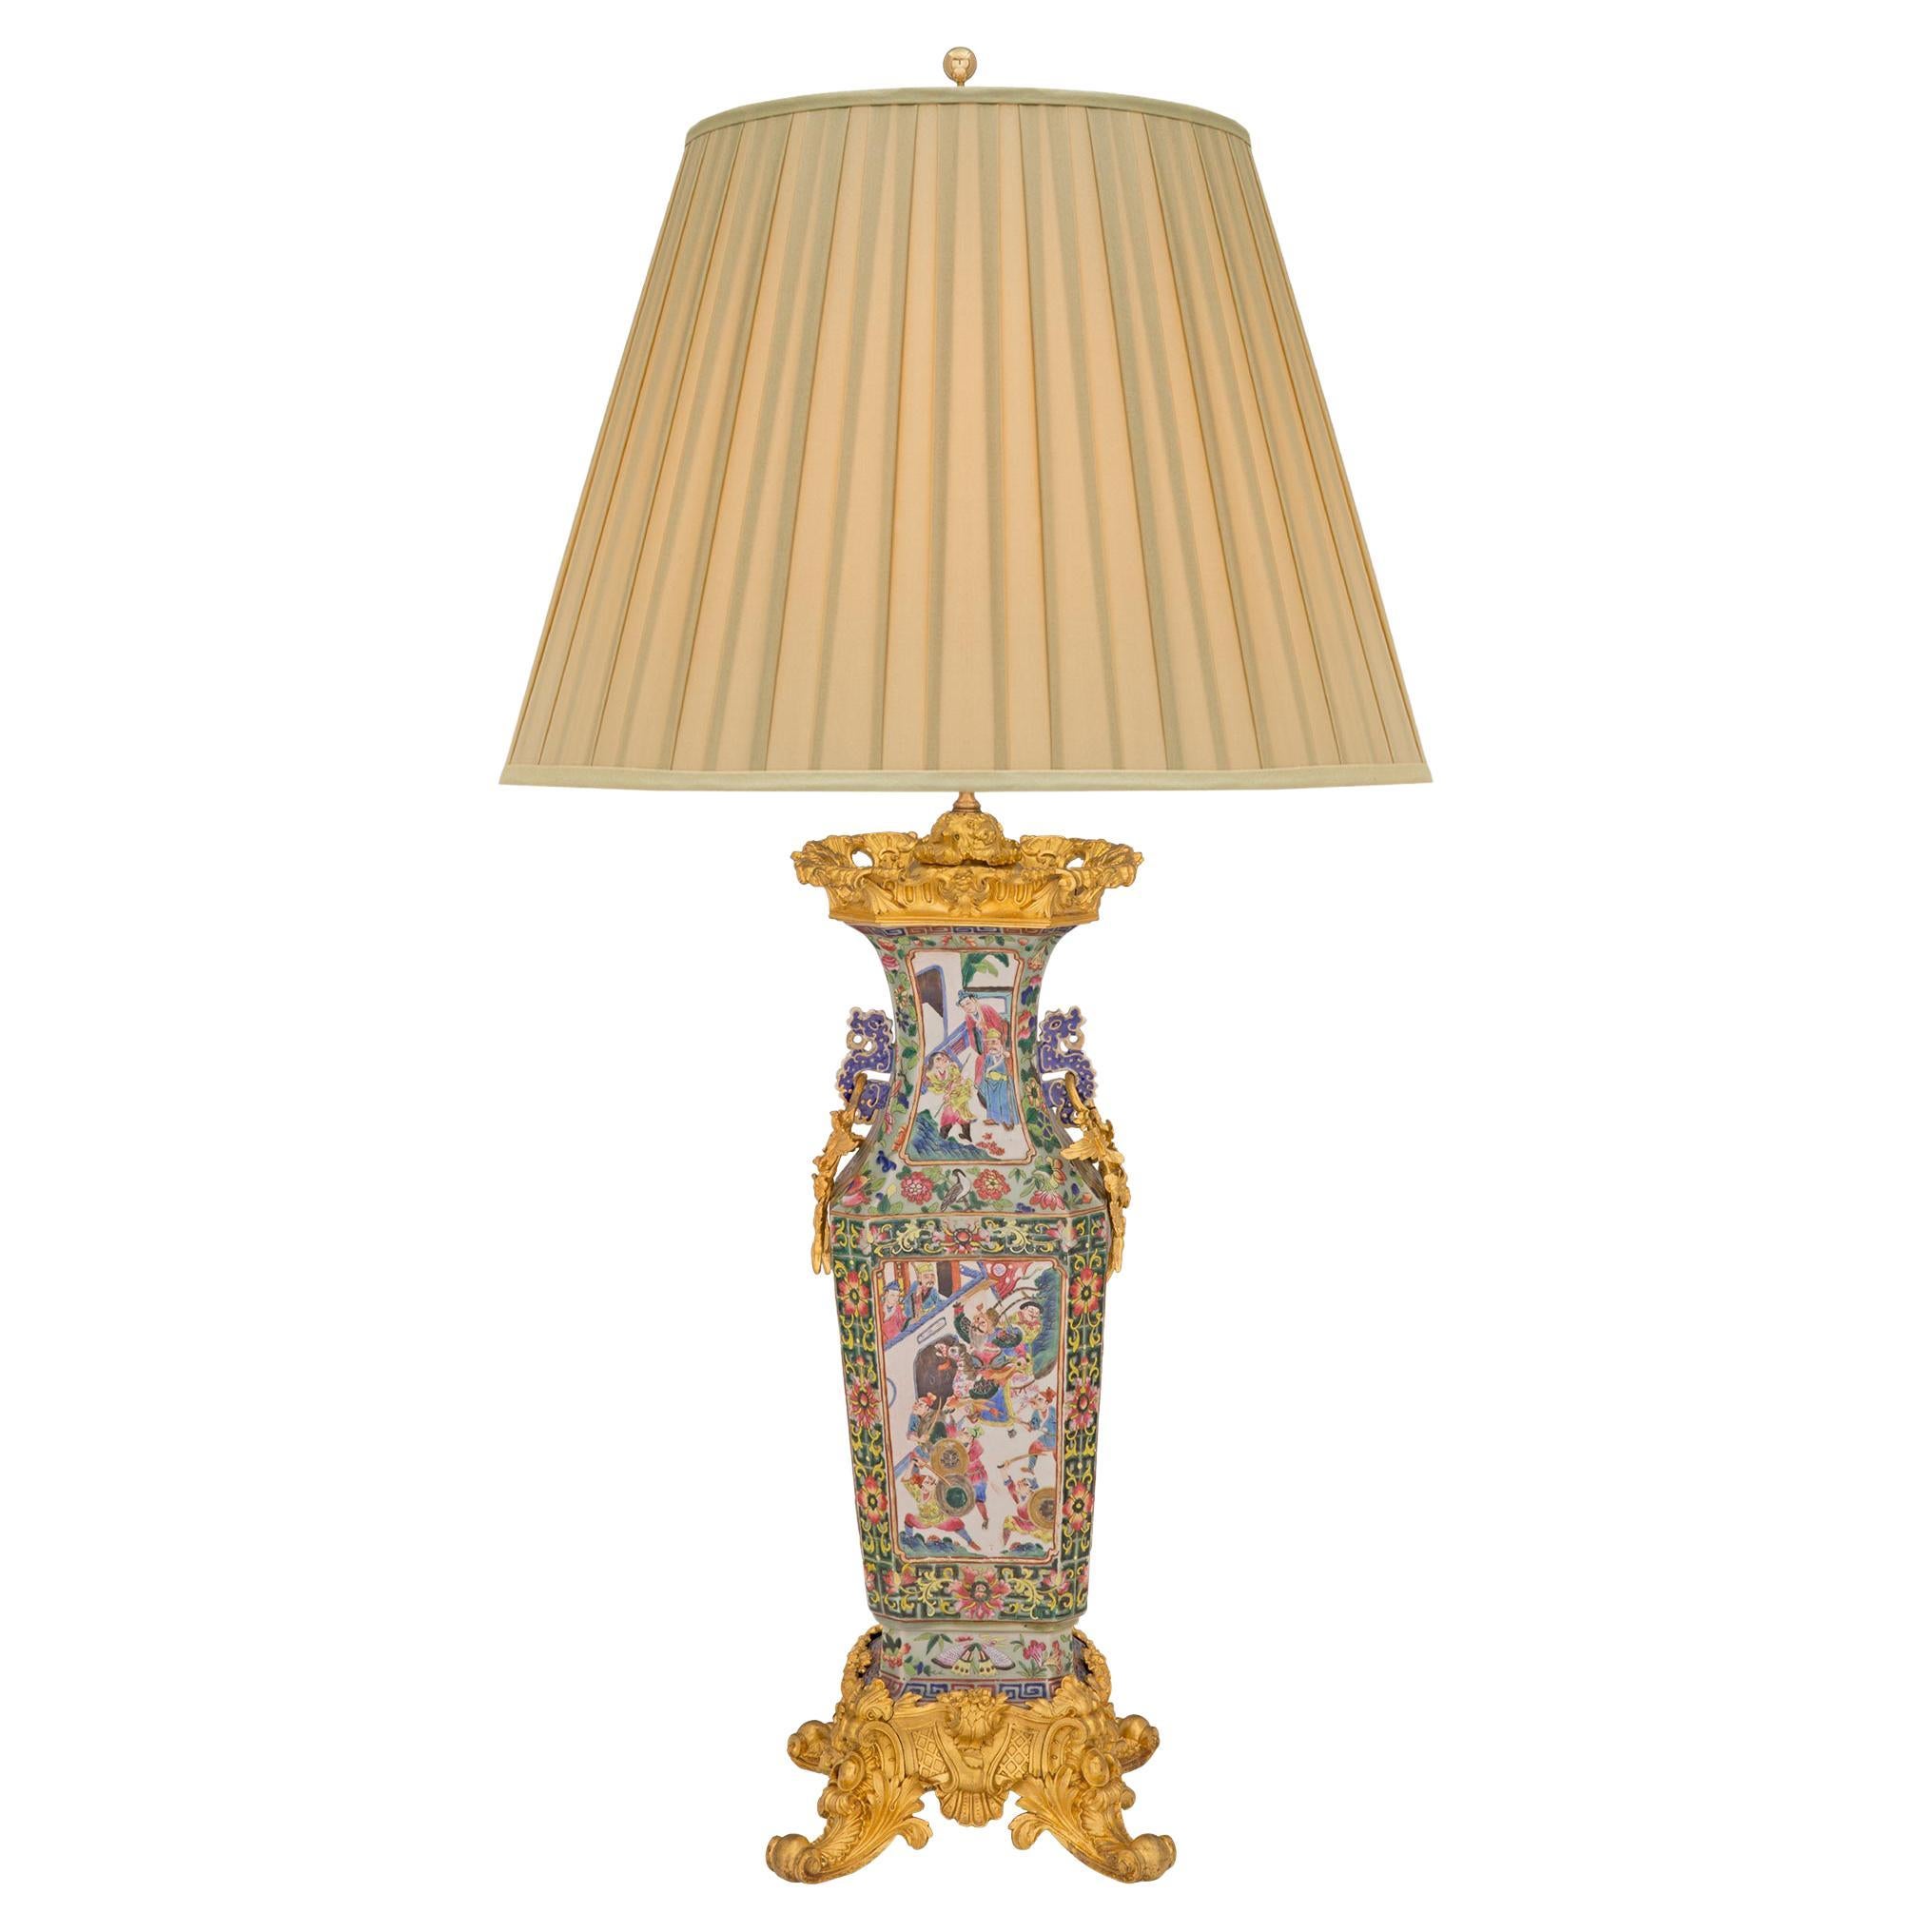 Lampe im Louis-XV-Stil des 19. Jahrhunderts, internationale und asiatische Zusammenarbeit